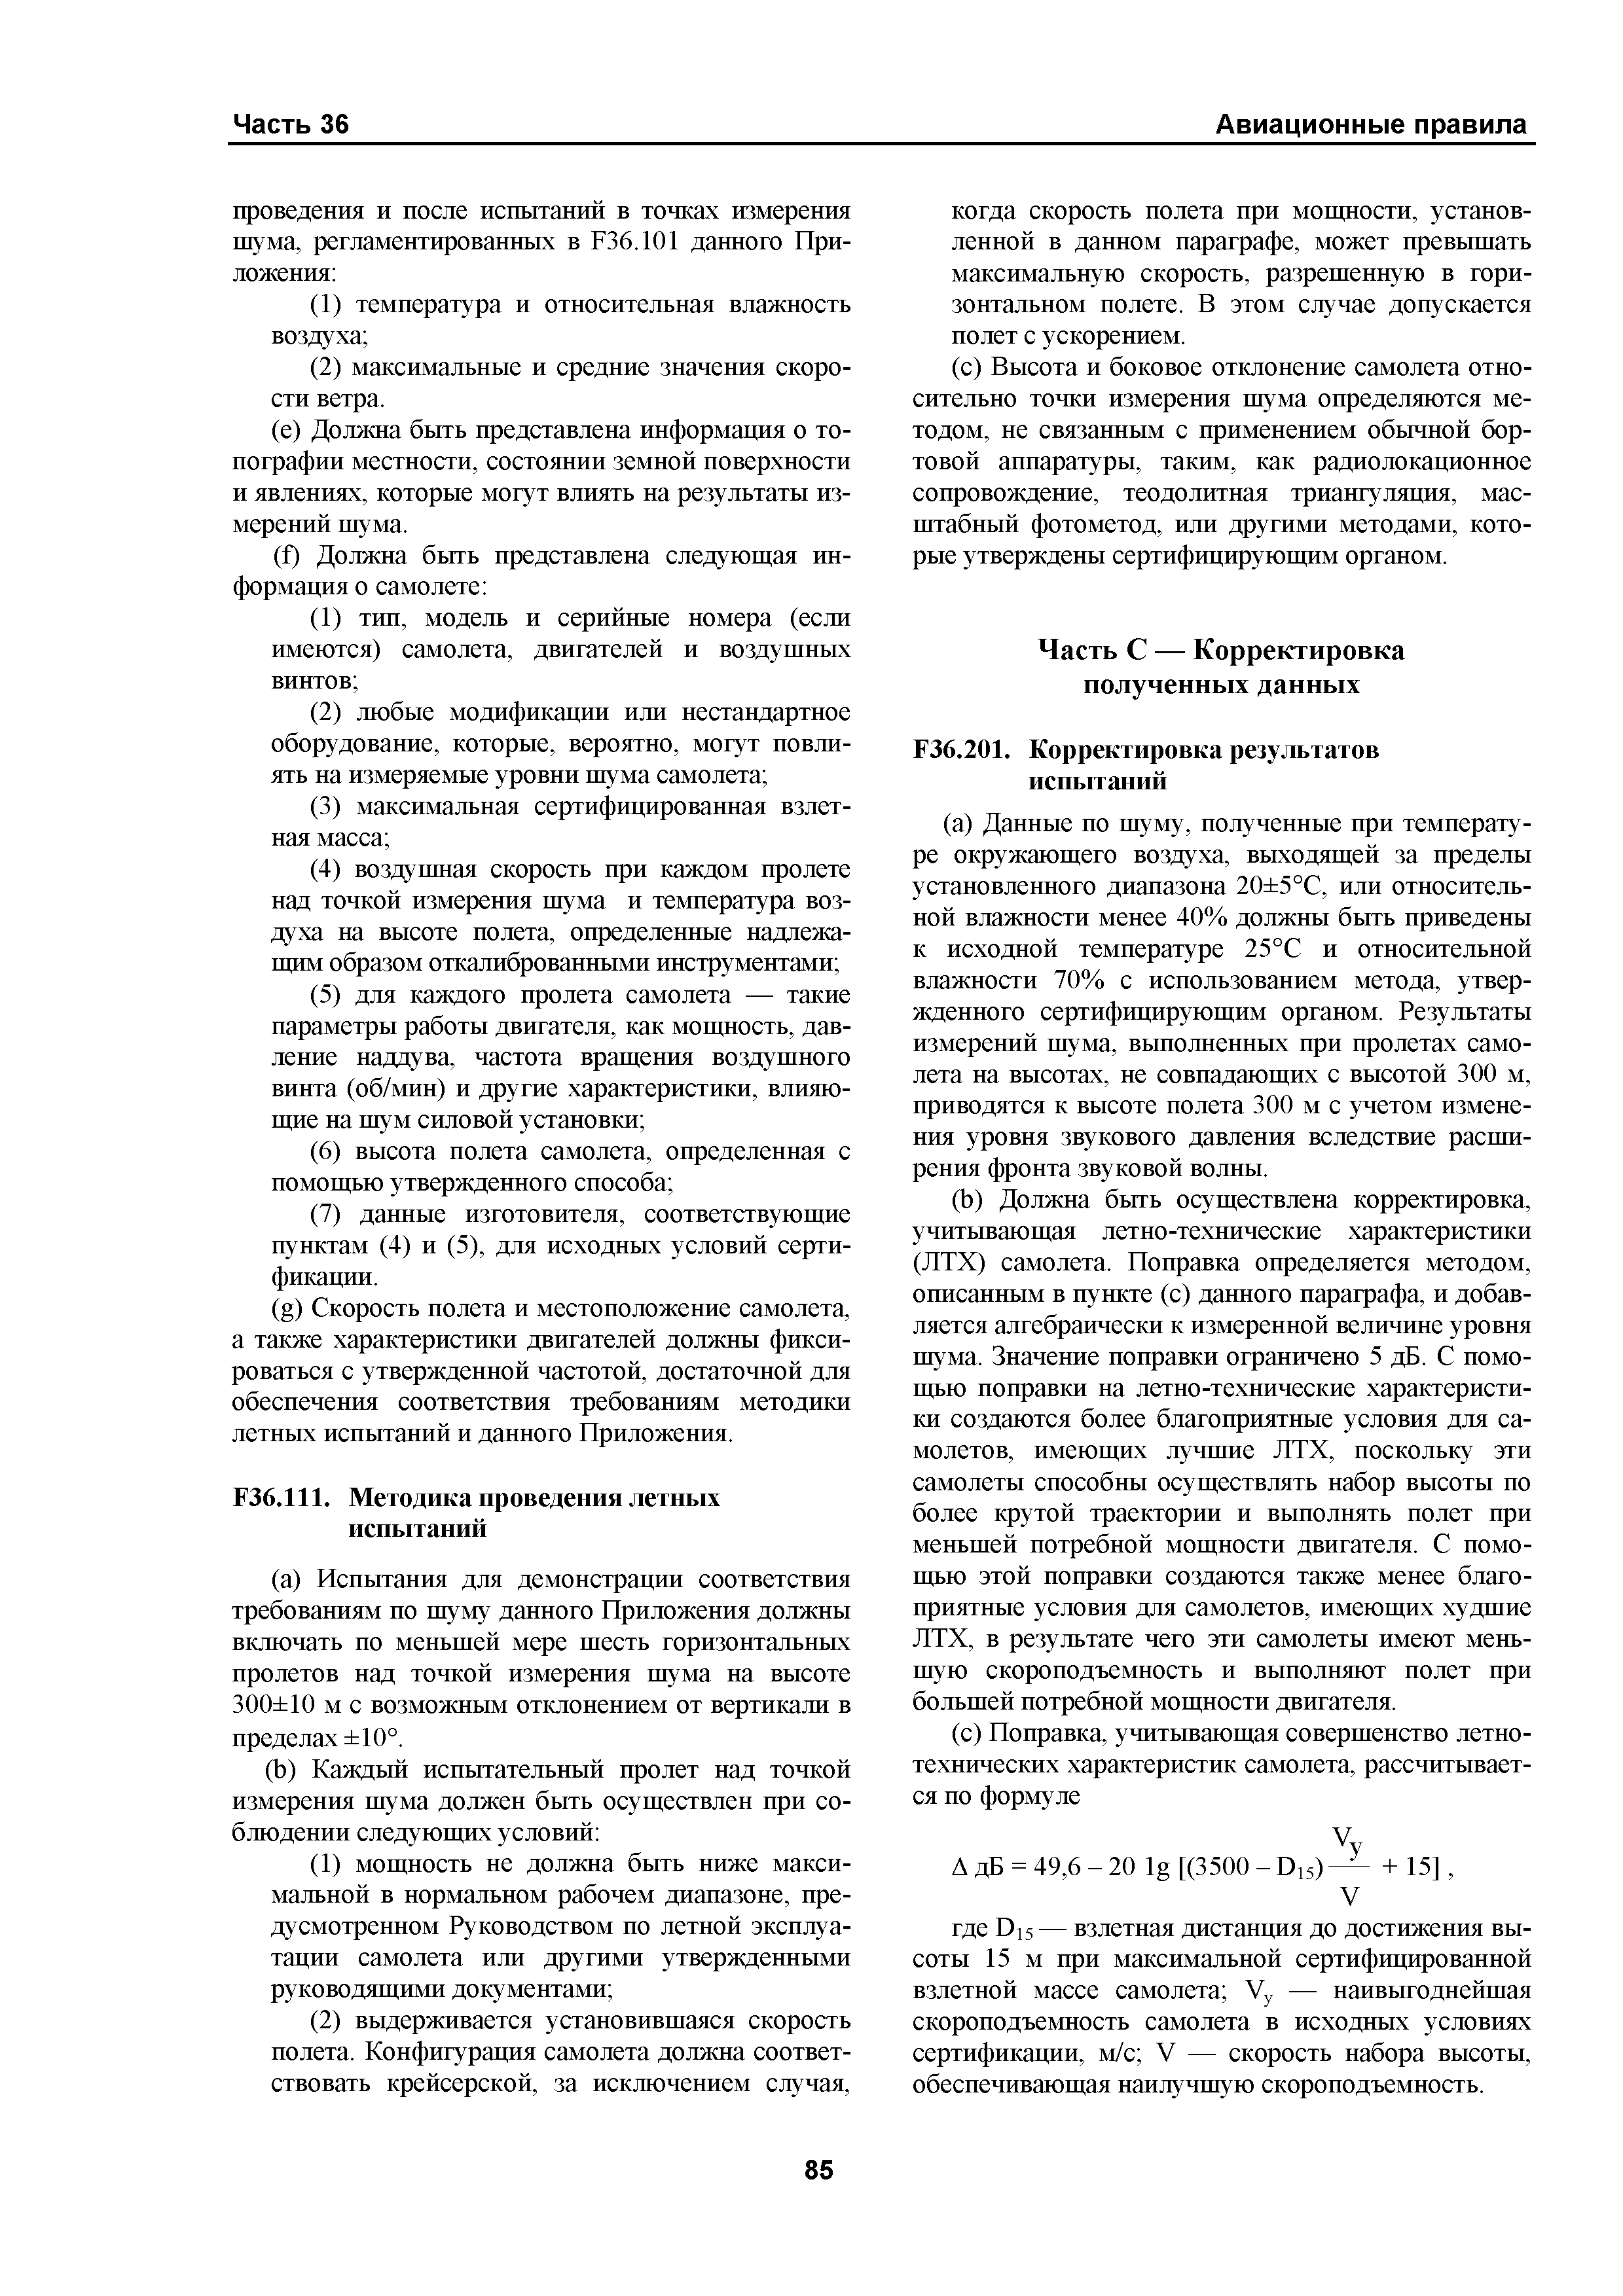 Авиационные правила Часть 36